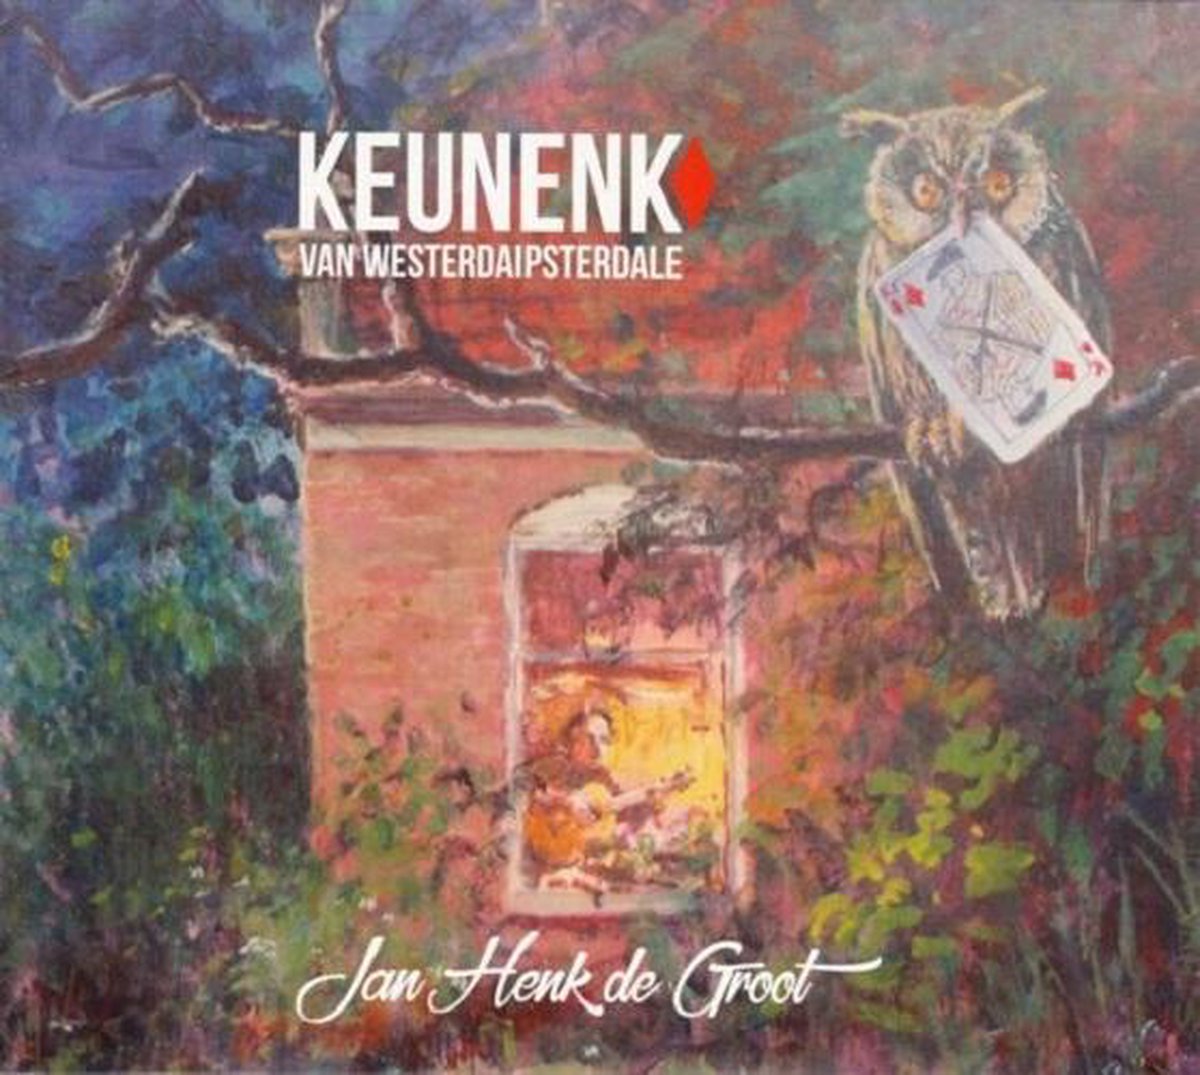 bol.com | Keunenk van Westerdaipsterdale, Jan Henk de Groot | LP (album) | Muziek